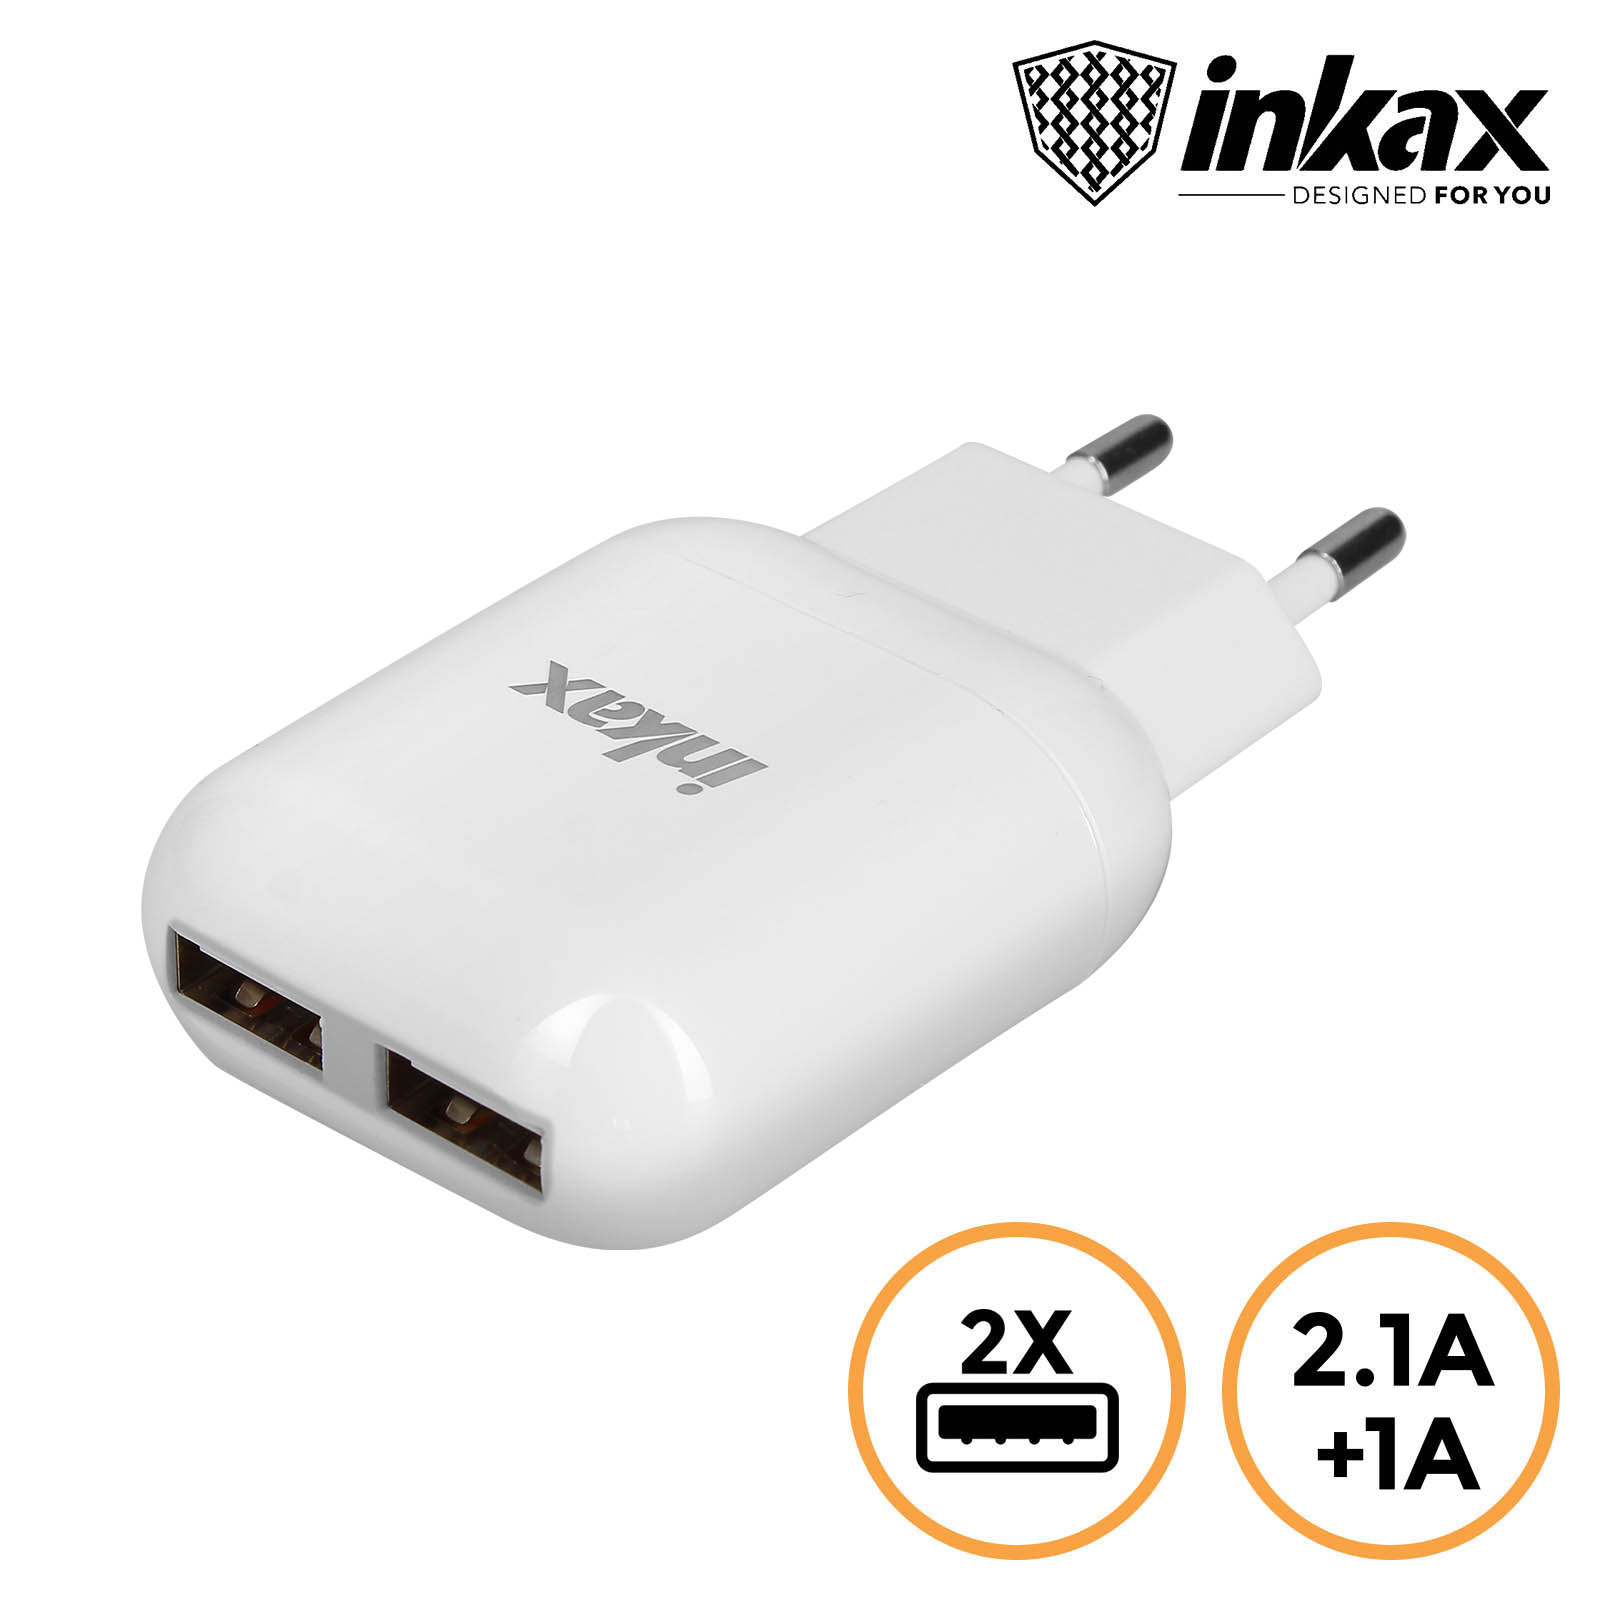 Caricabatteria settore con doppia USB 2.1A / 1.0A, Inkax - bianco - Italiano